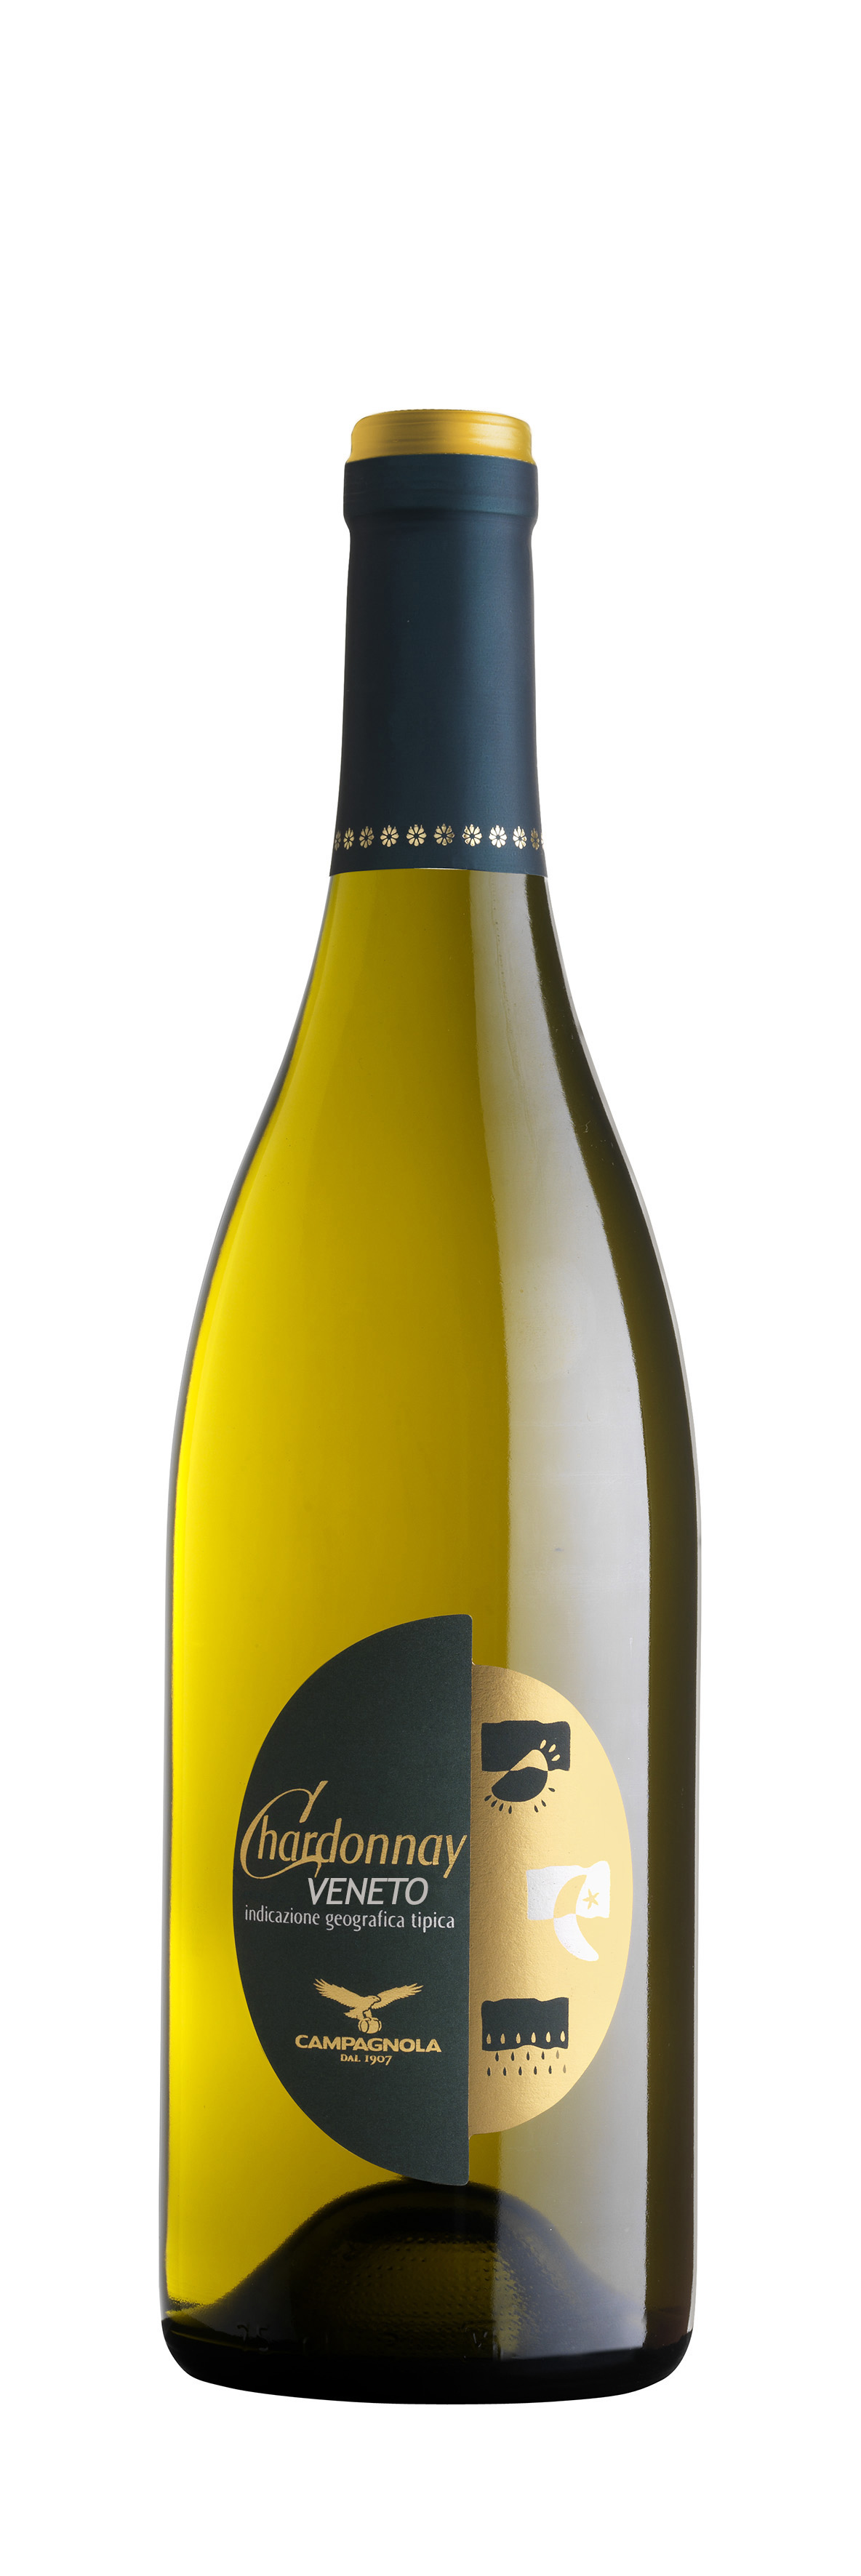 Chardonnay del Veneto IGT 2020, Campagnola